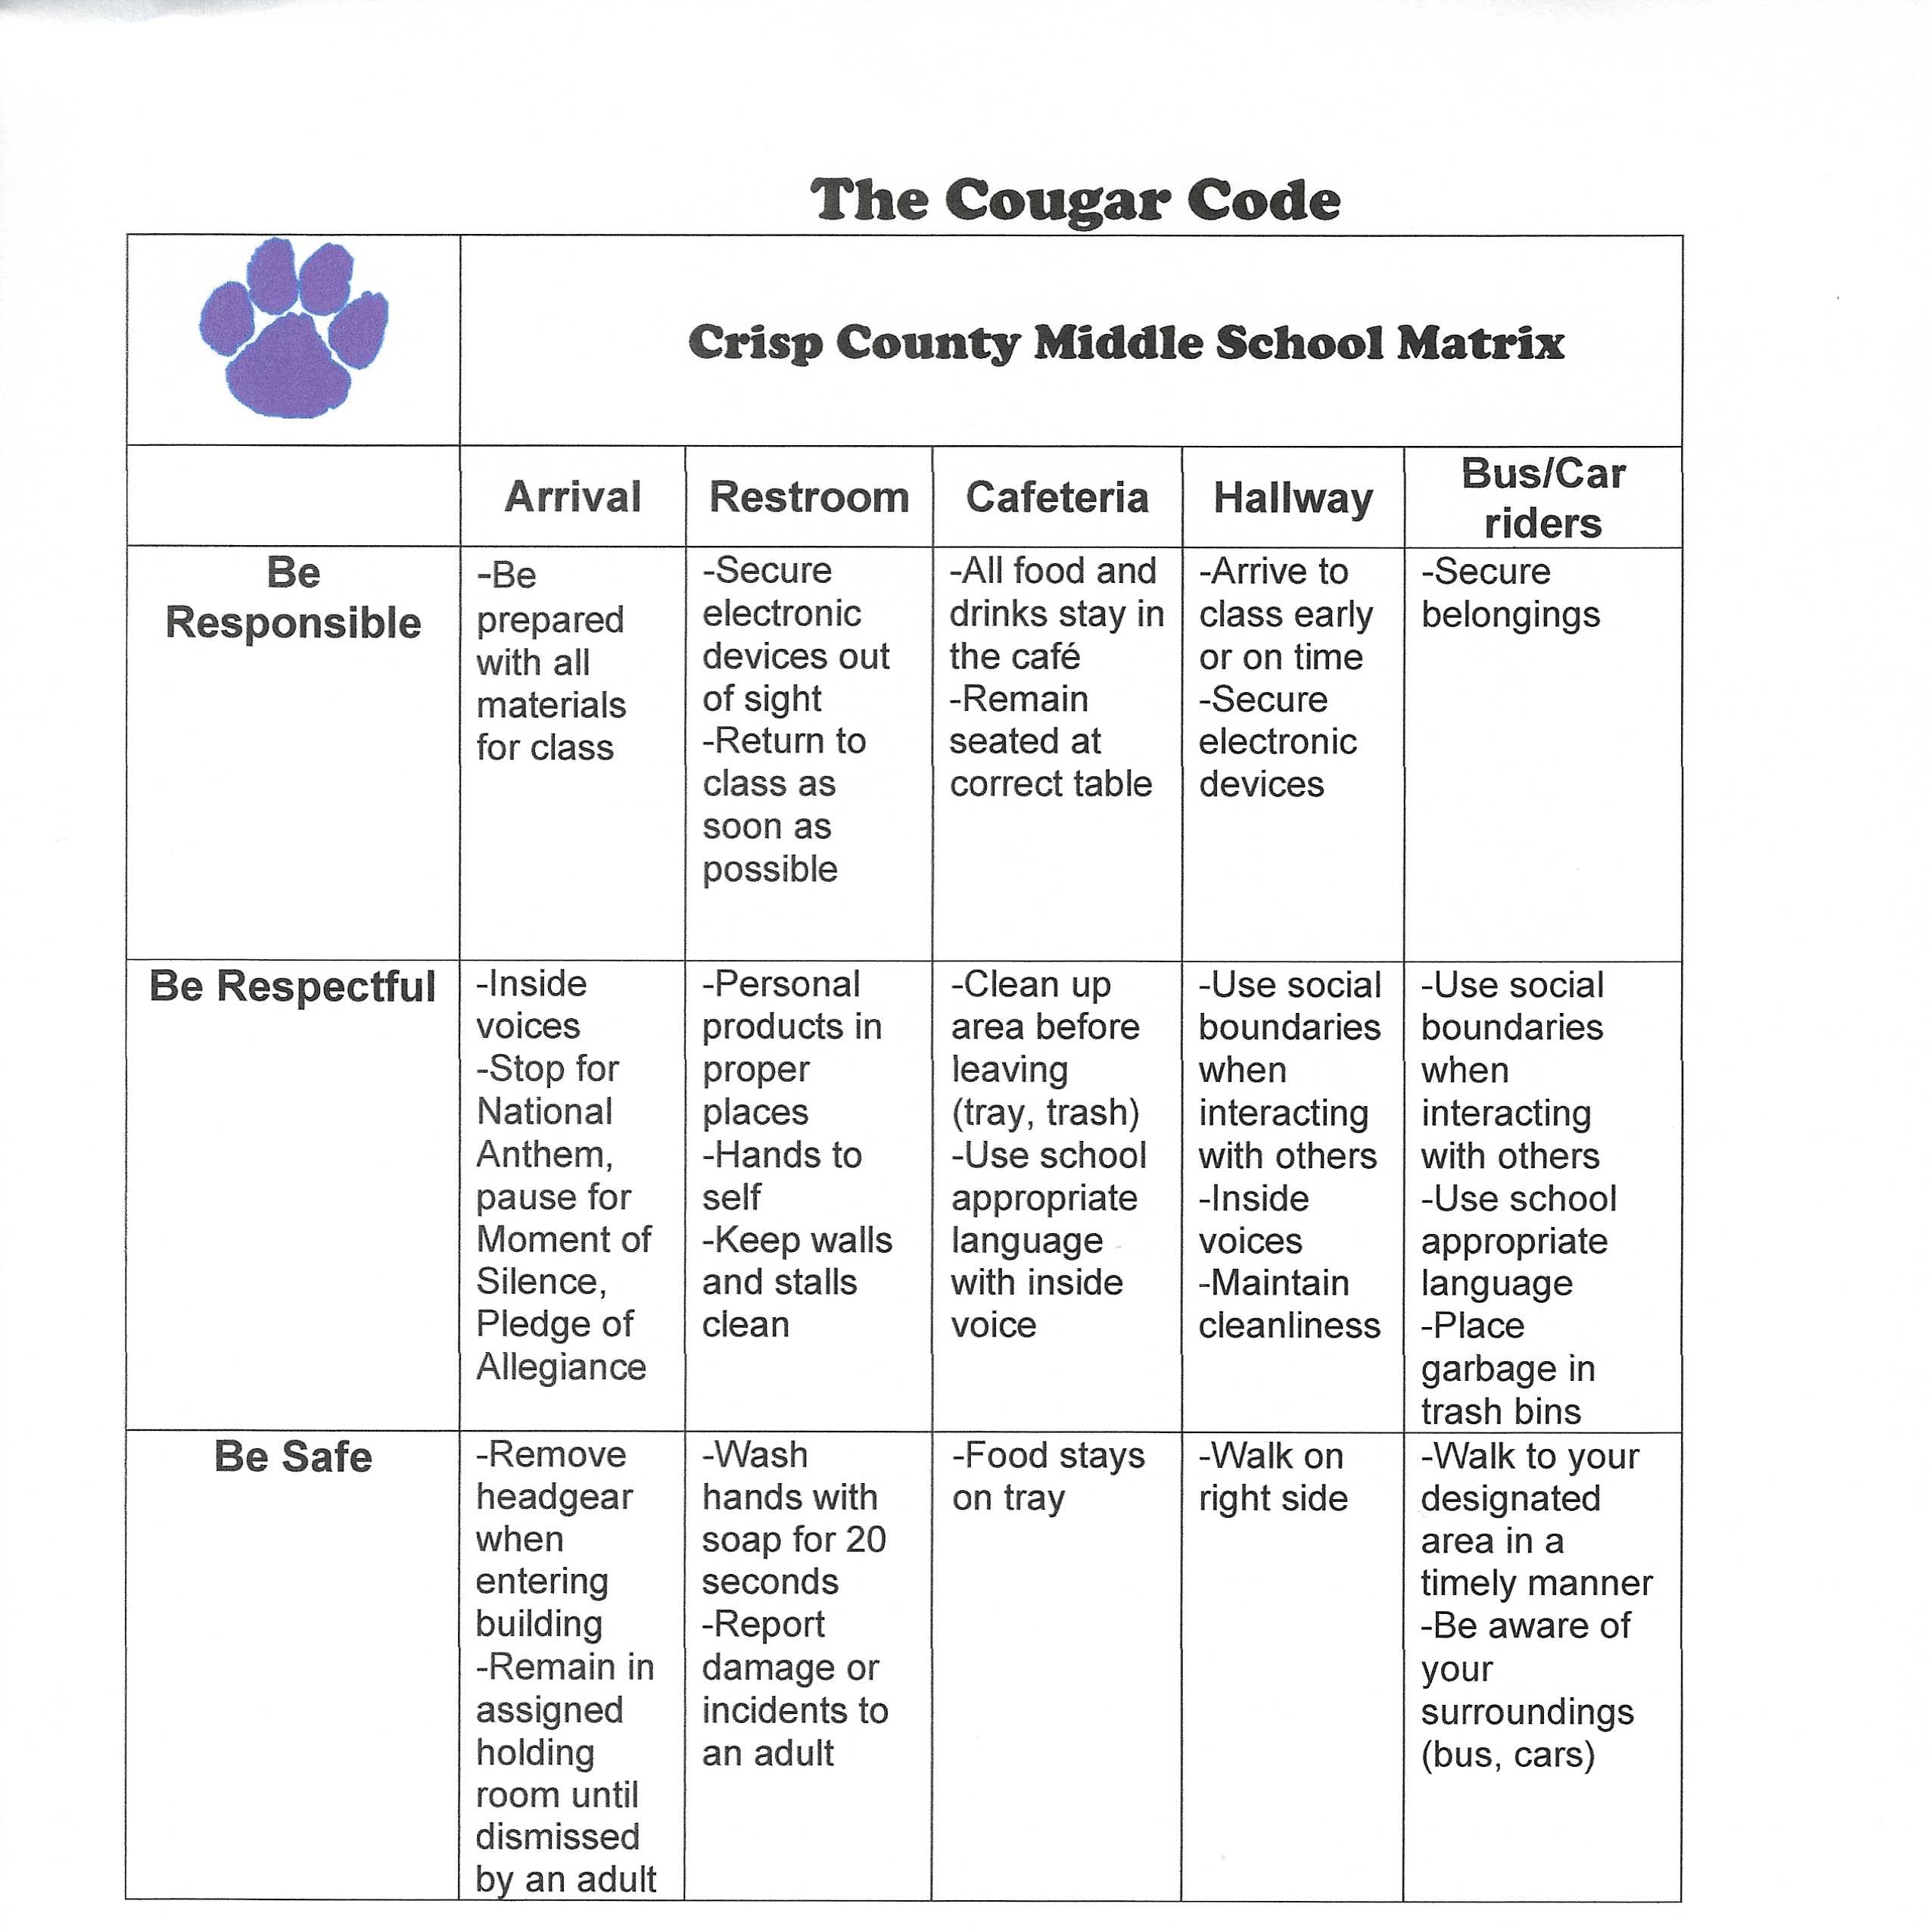 Cougar code at CCMS